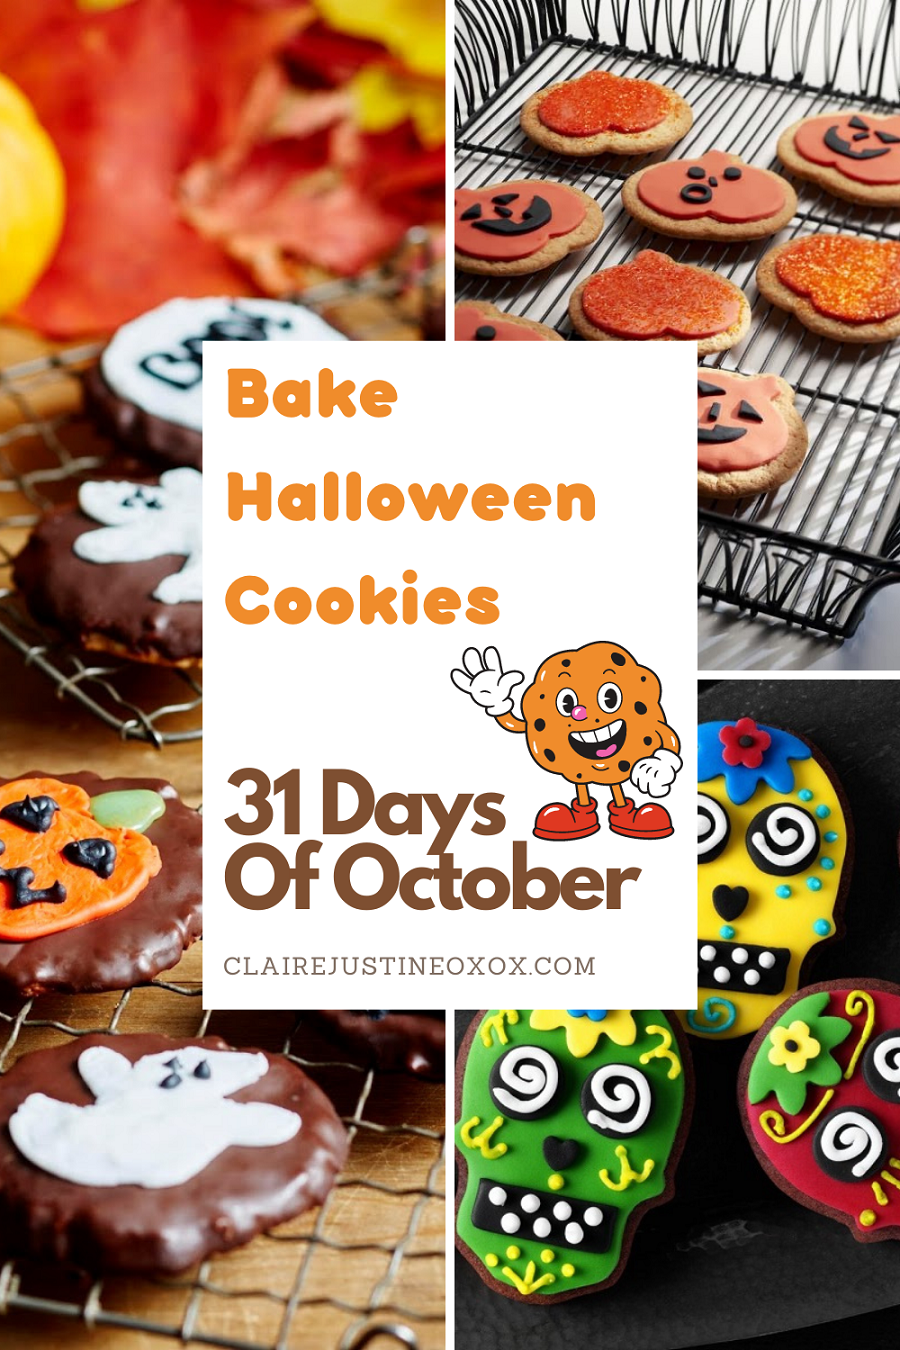 Bake Halloween Cookies: 31 Days Of October